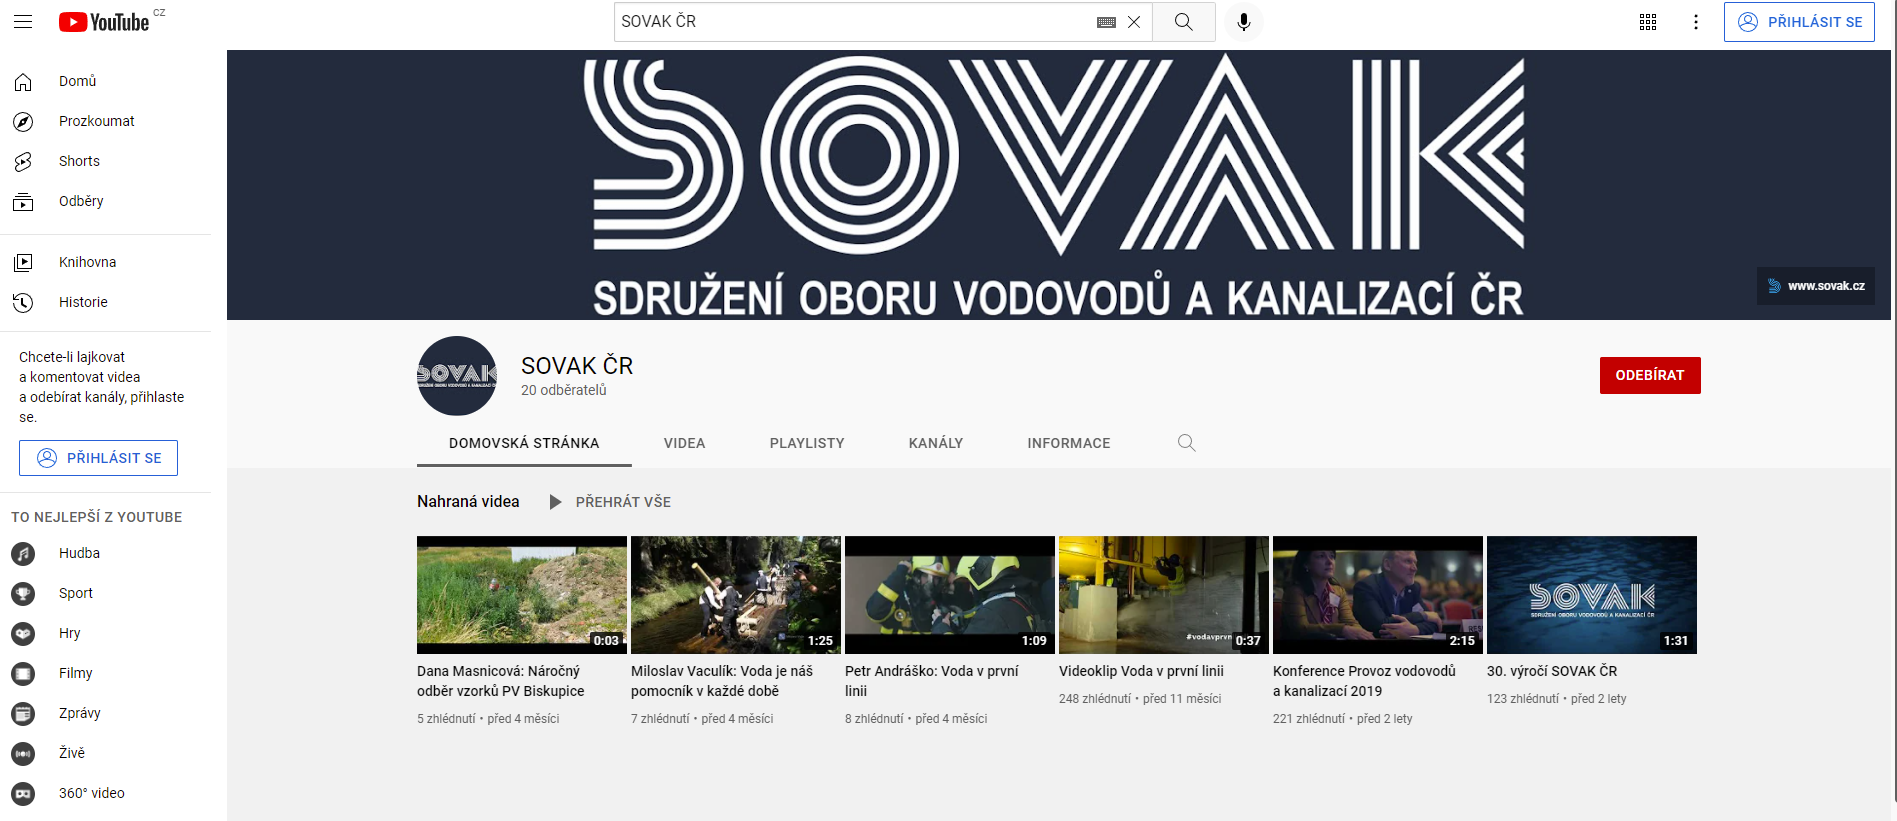 SOVAK ČR na YouTube